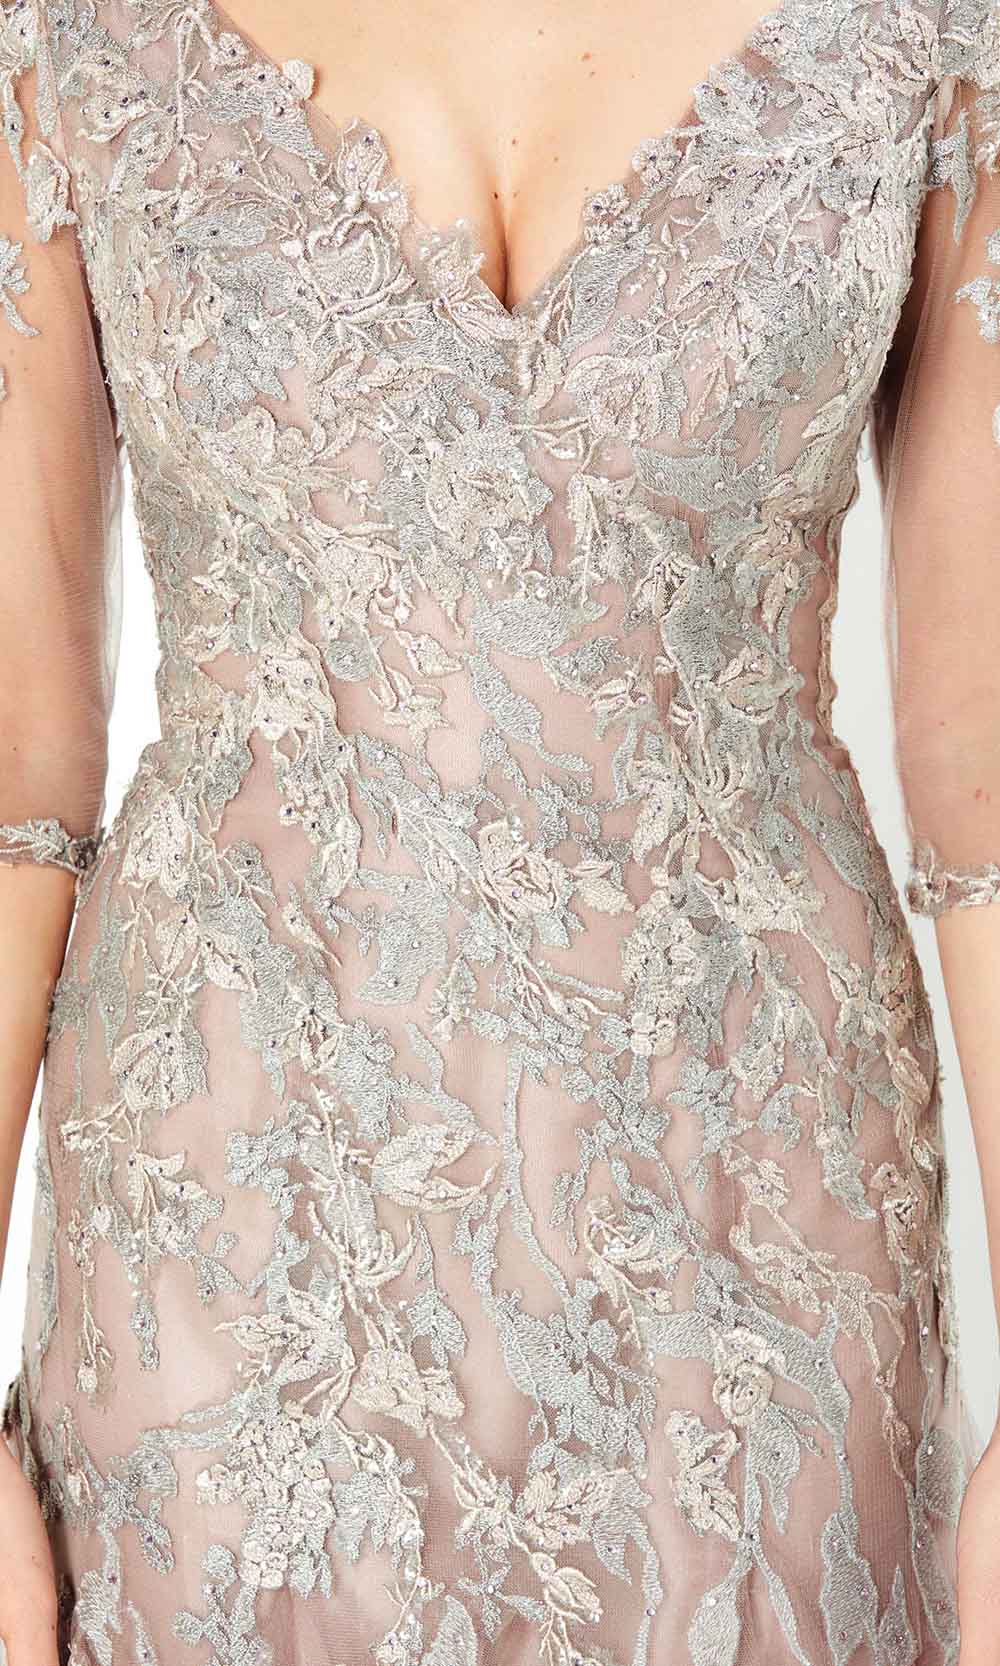 Montage by Mon Cheri - 220936 Jewel Ornate Lace Appliqued Dress Evening Dresses